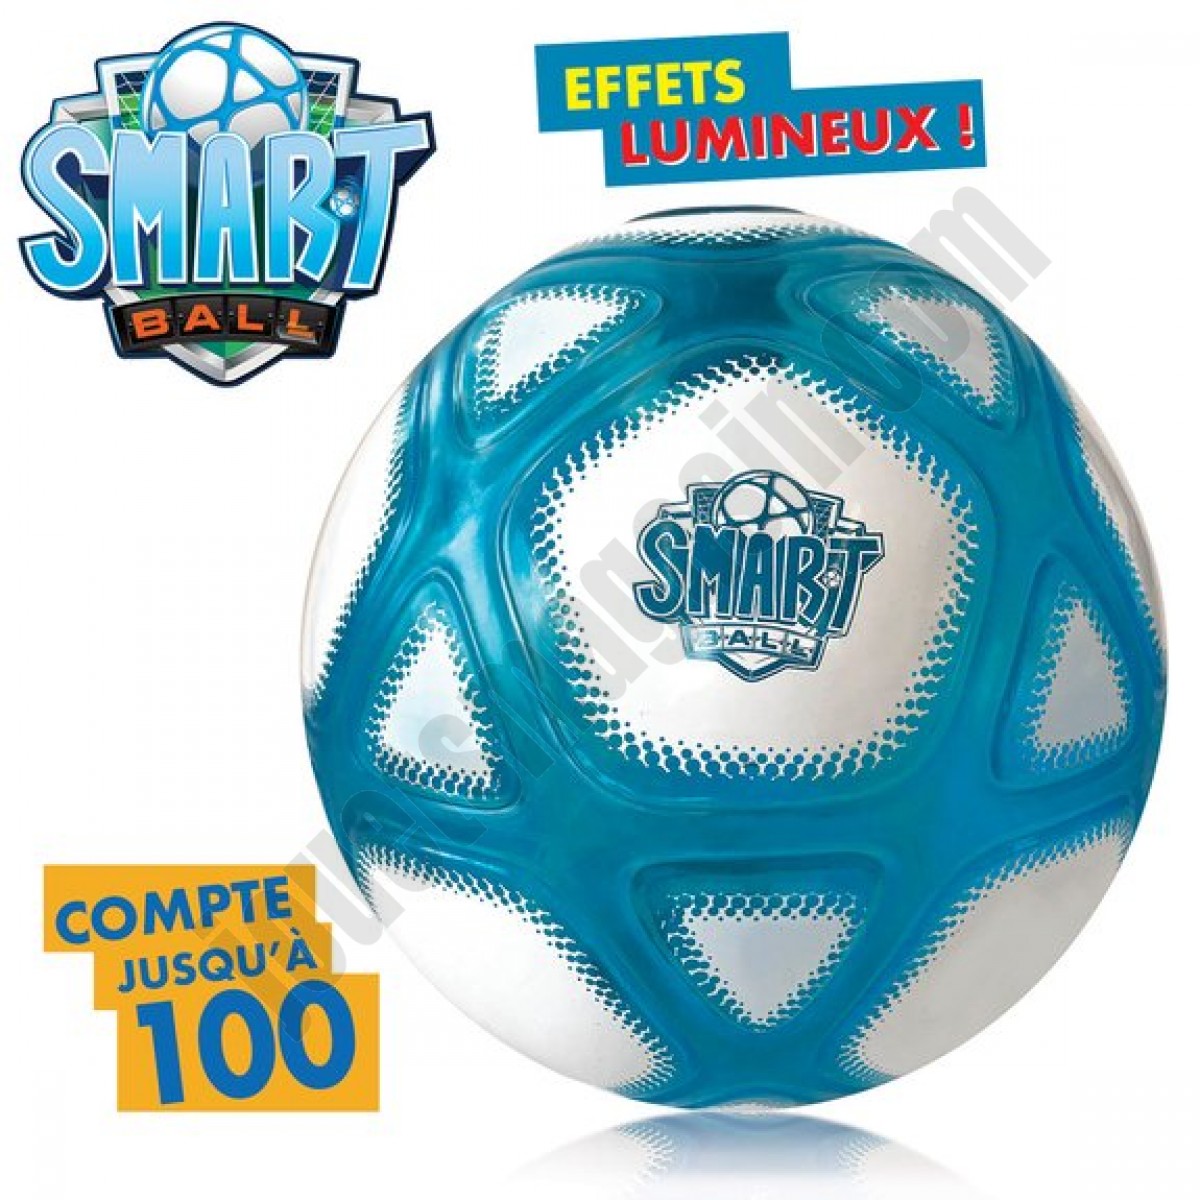 Smart Ball - Ballon de Football Compteur de Jongles - déstockage - Smart Ball - Ballon de Football Compteur de Jongles - déstockage